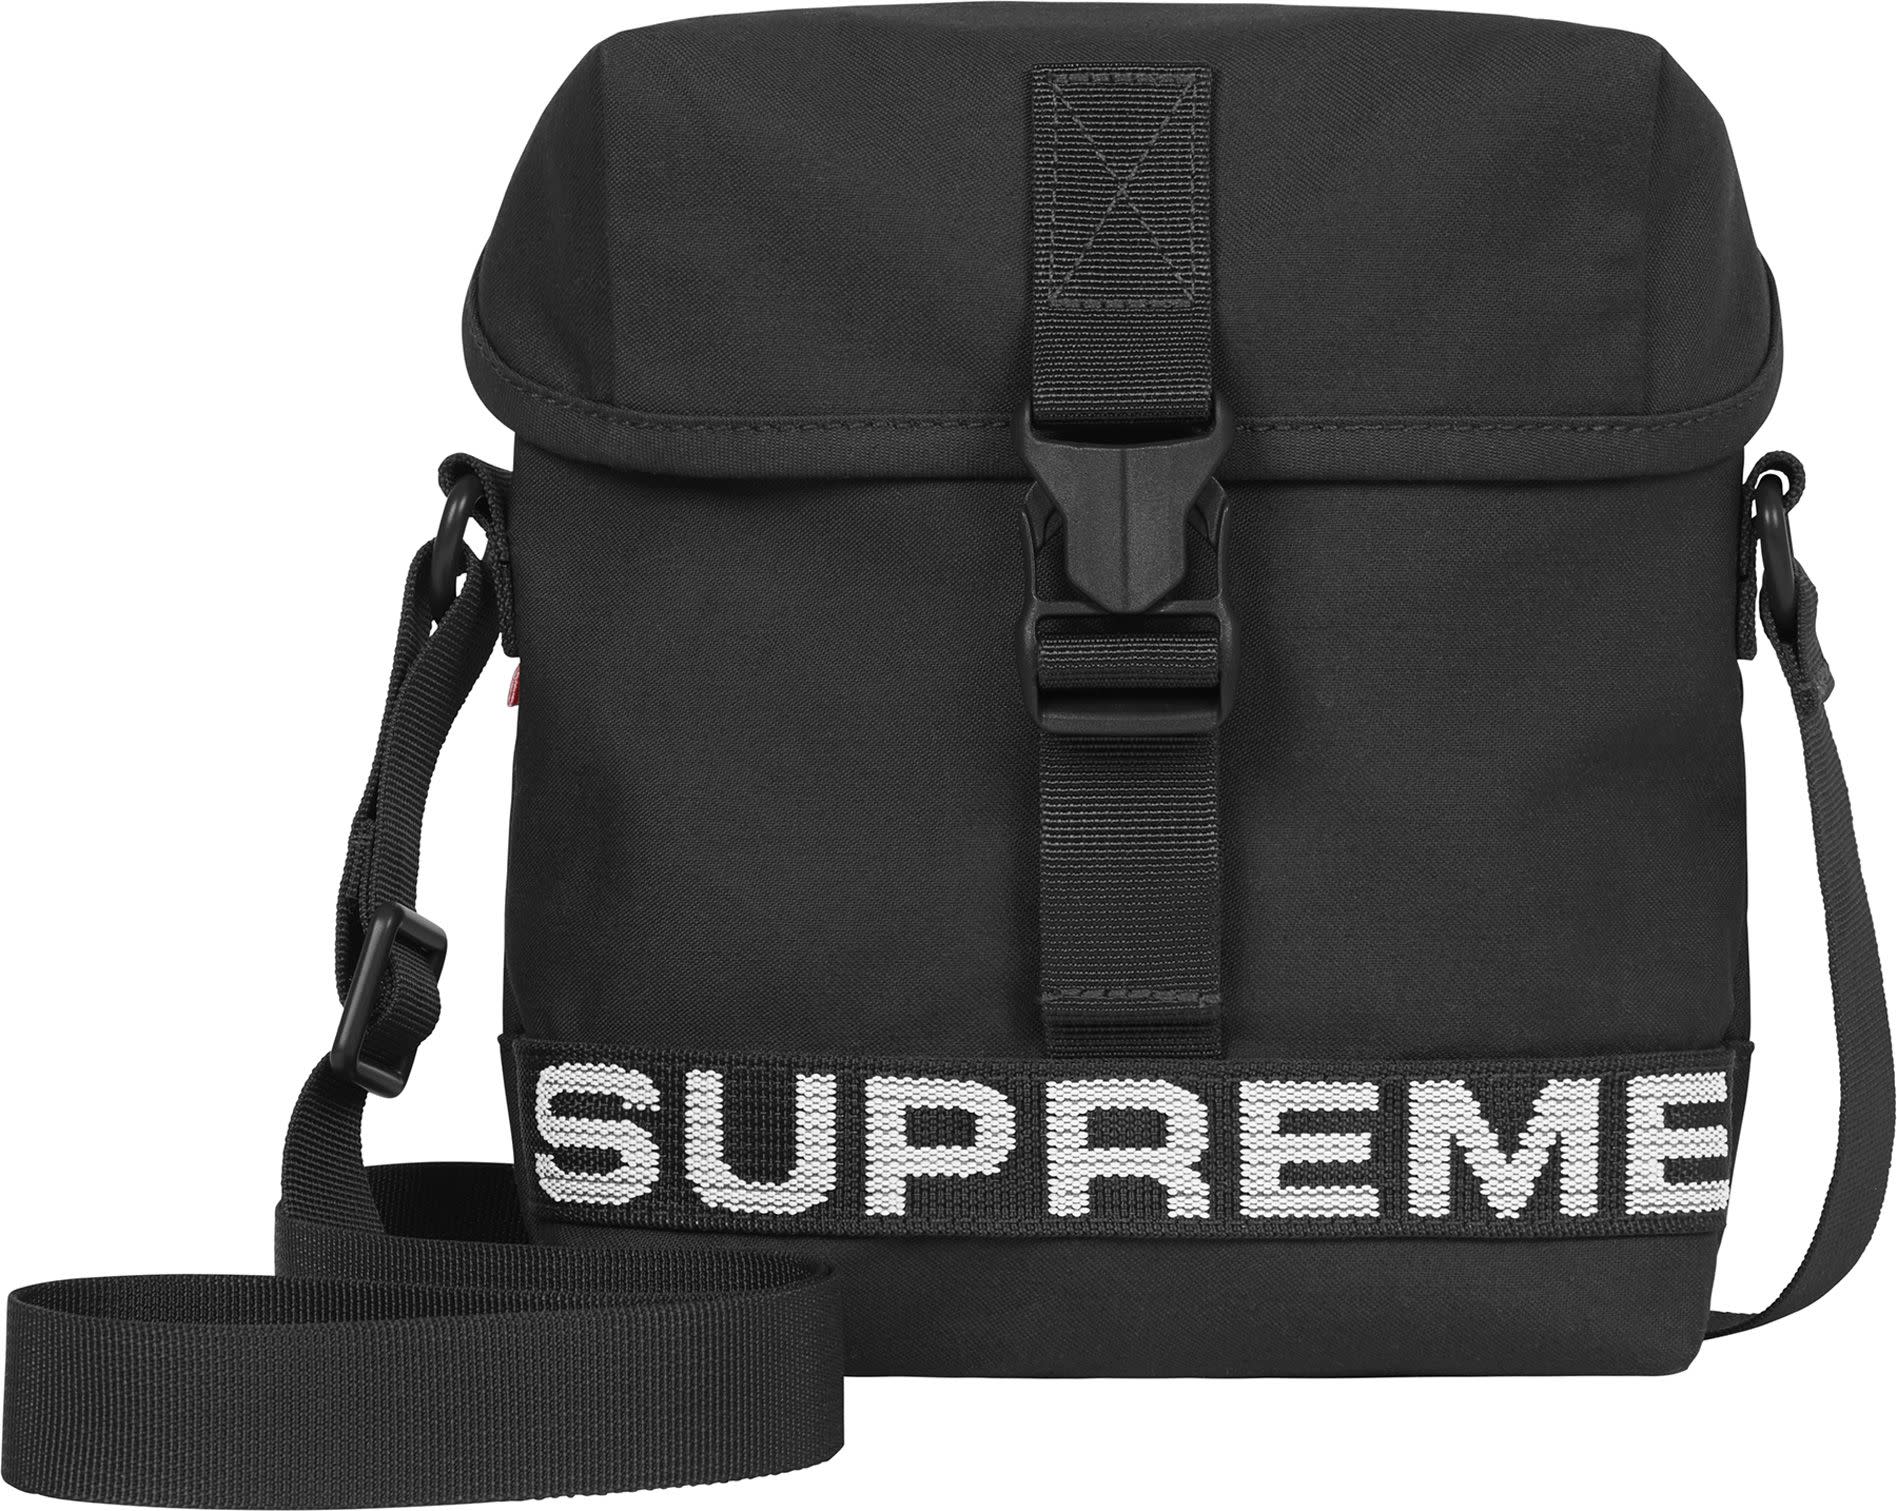 Supreme Field Side Bag Black